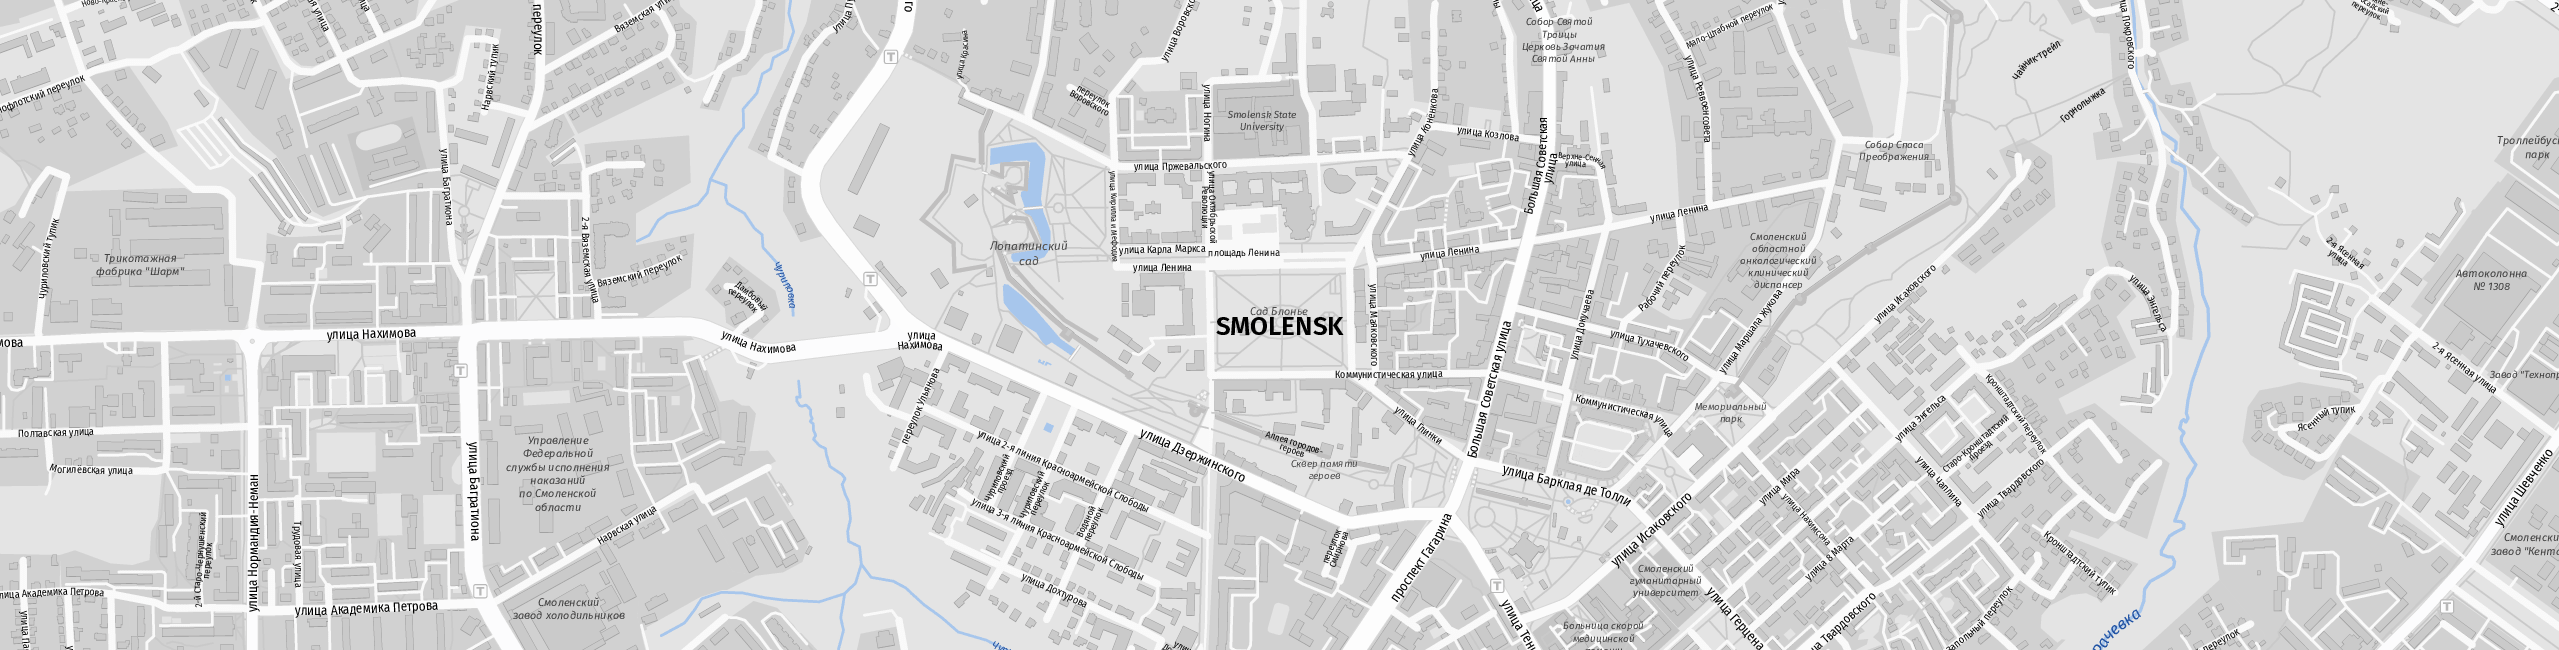 Stadtplan Smolensk zum Downloaden.